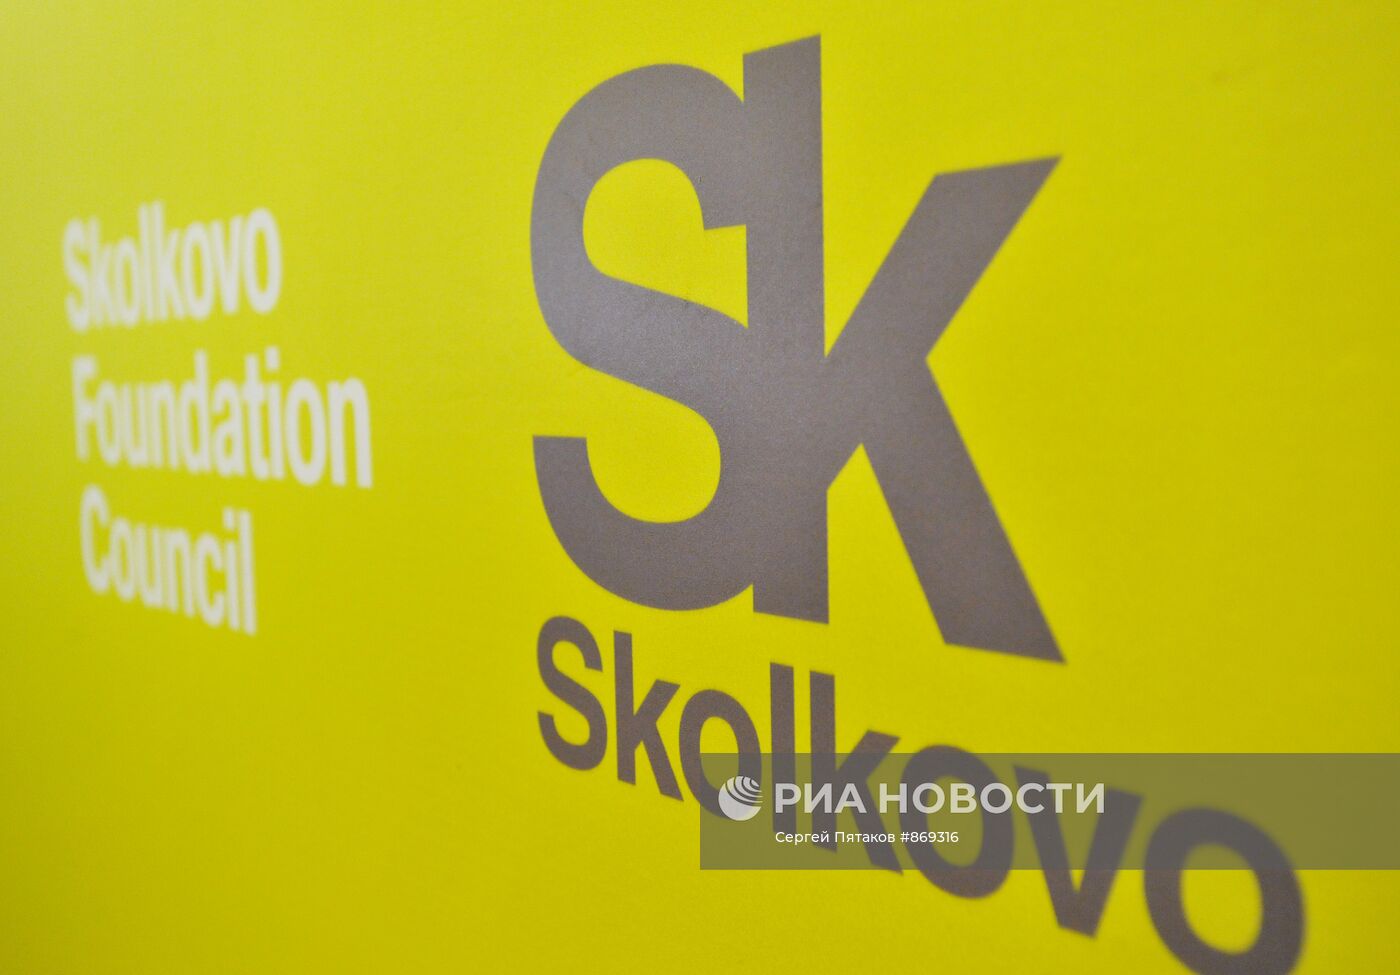 Логотип иннограда "Сколково"